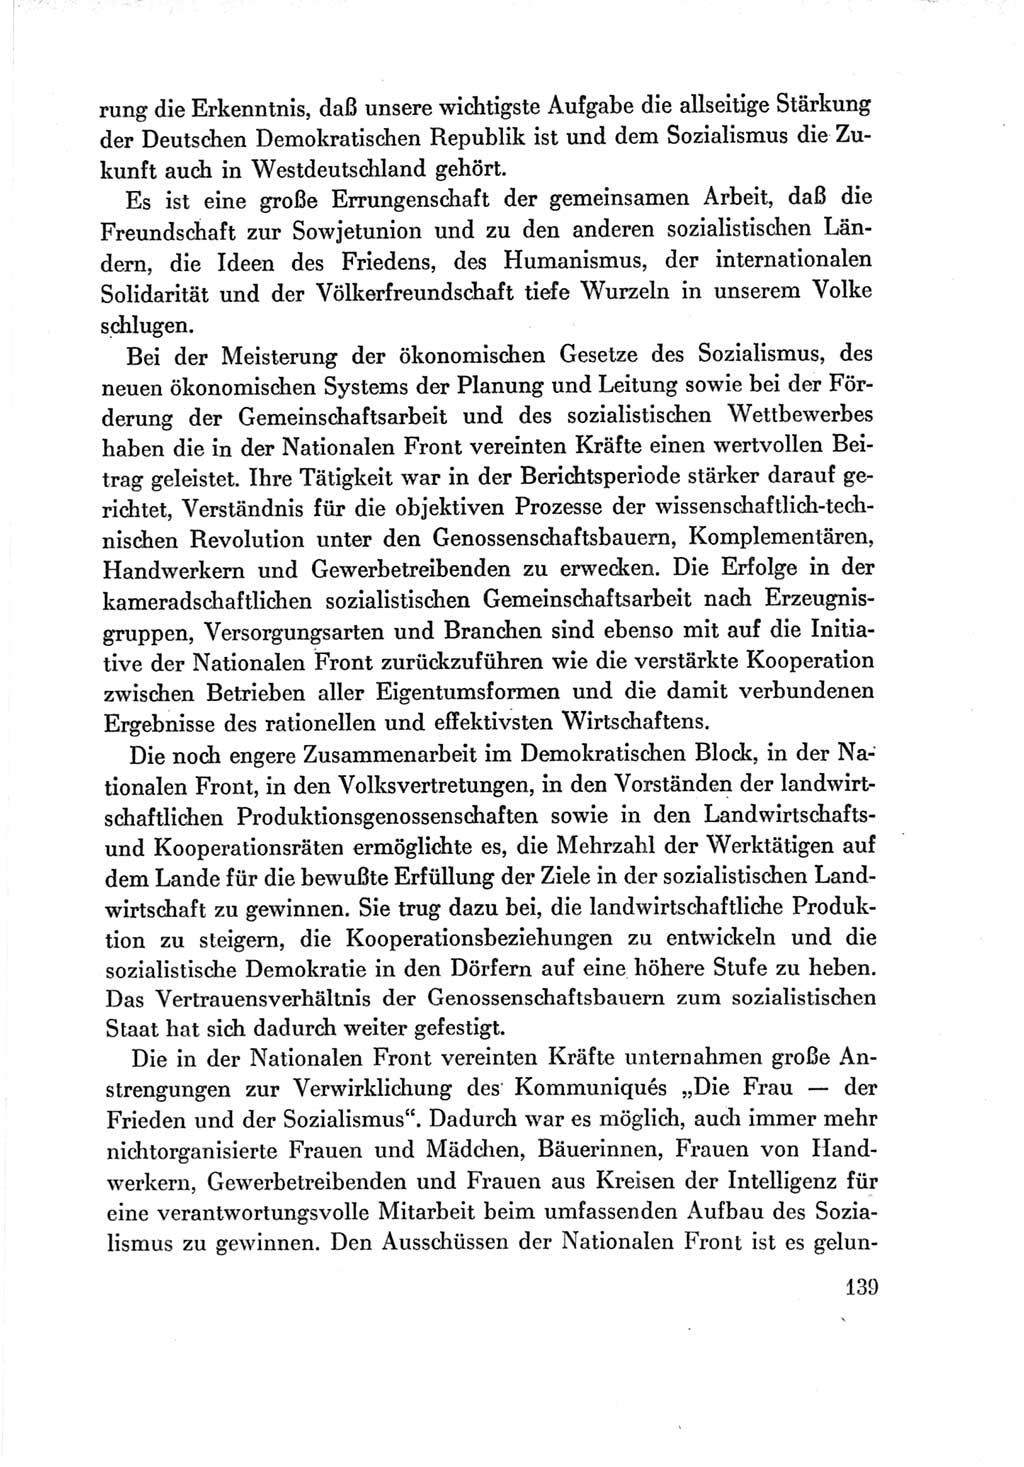 Protokoll der Verhandlungen des Ⅶ. Parteitages der Sozialistischen Einheitspartei Deutschlands (SED) [Deutsche Demokratische Republik (DDR)] 1967, Band Ⅳ, Seite 139 (Prot. Verh. Ⅶ. PT SED DDR 1967, Bd. Ⅳ, S. 139)